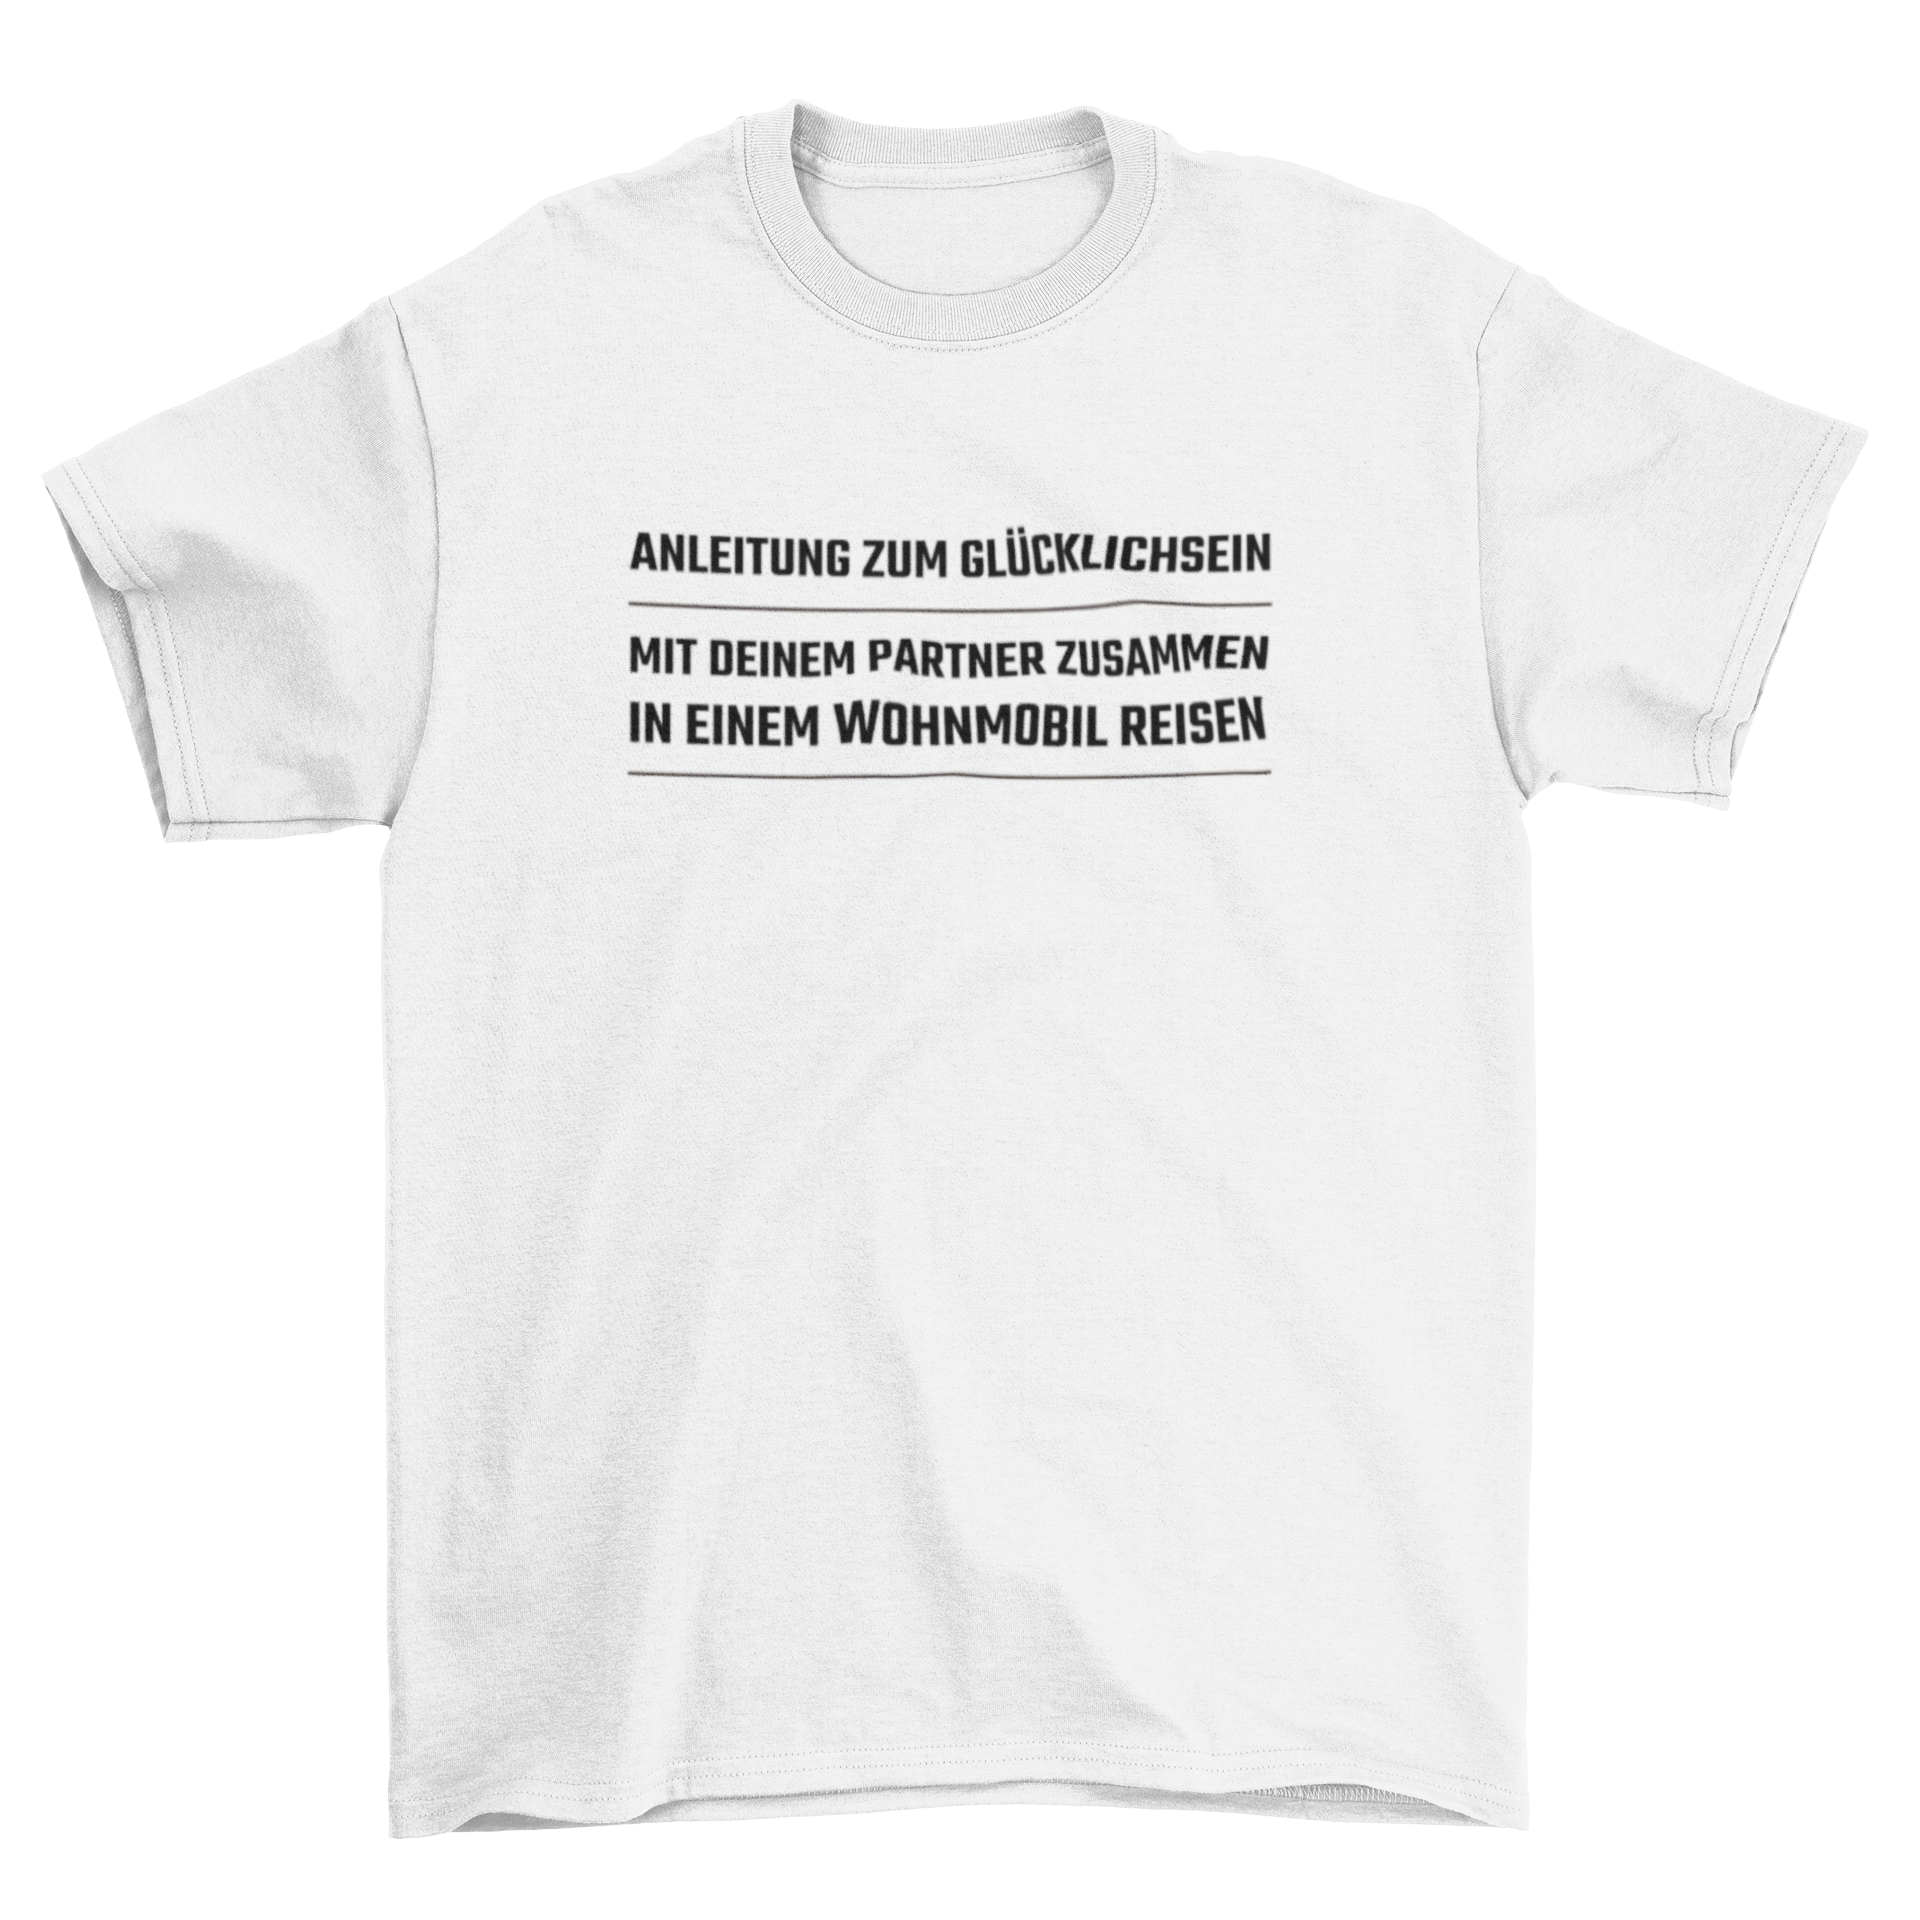 Anleitung zum Glücklichsein  -  T-Shirt